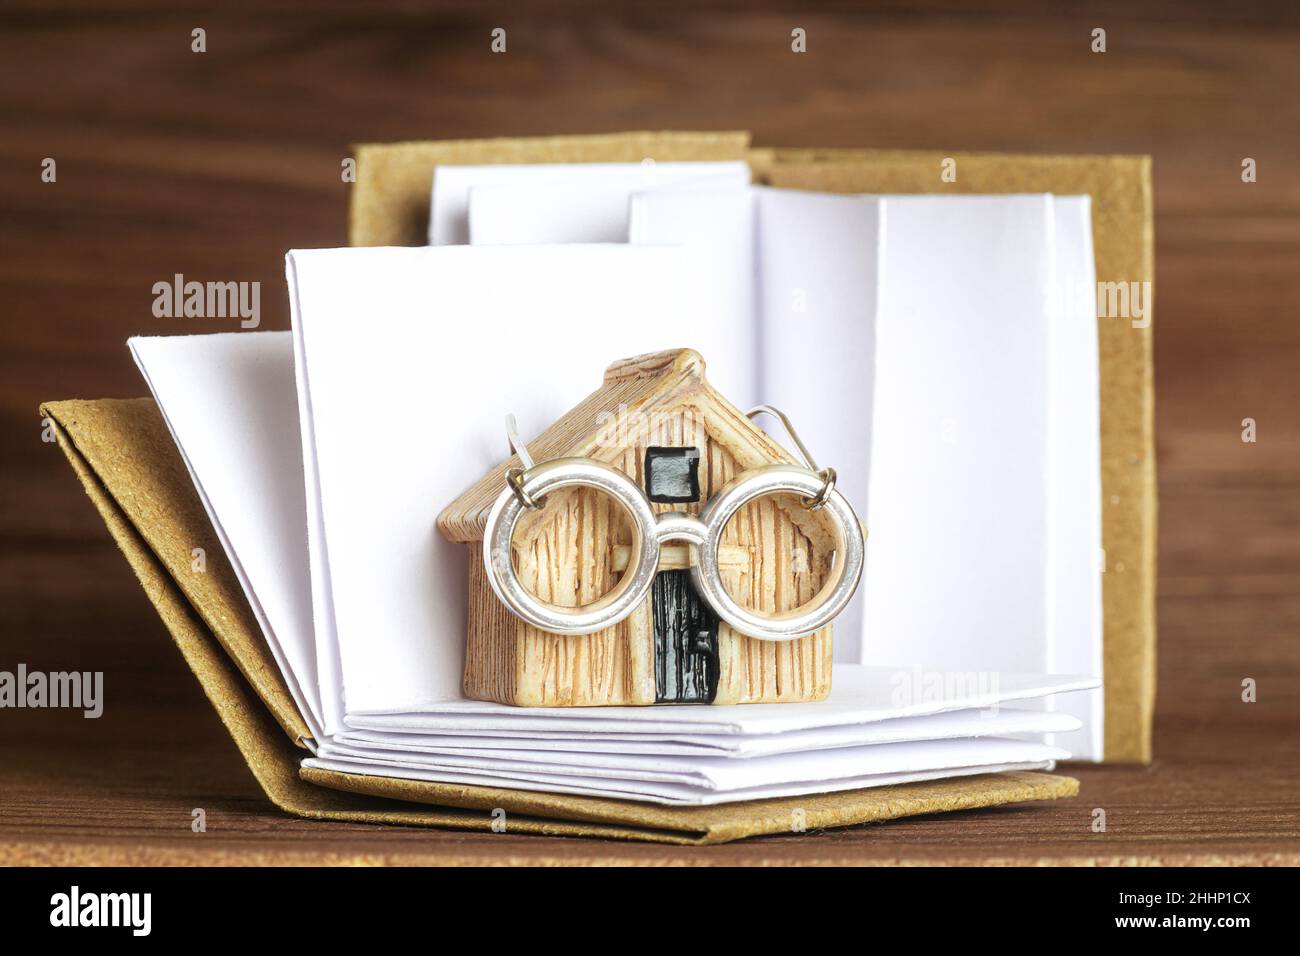 Modello di casa in miniatura che indossa occhiali in acciaio in piedi su un libro aperto con pagine bianche. Concetto creativo di contabilità domestica. Foto Stock